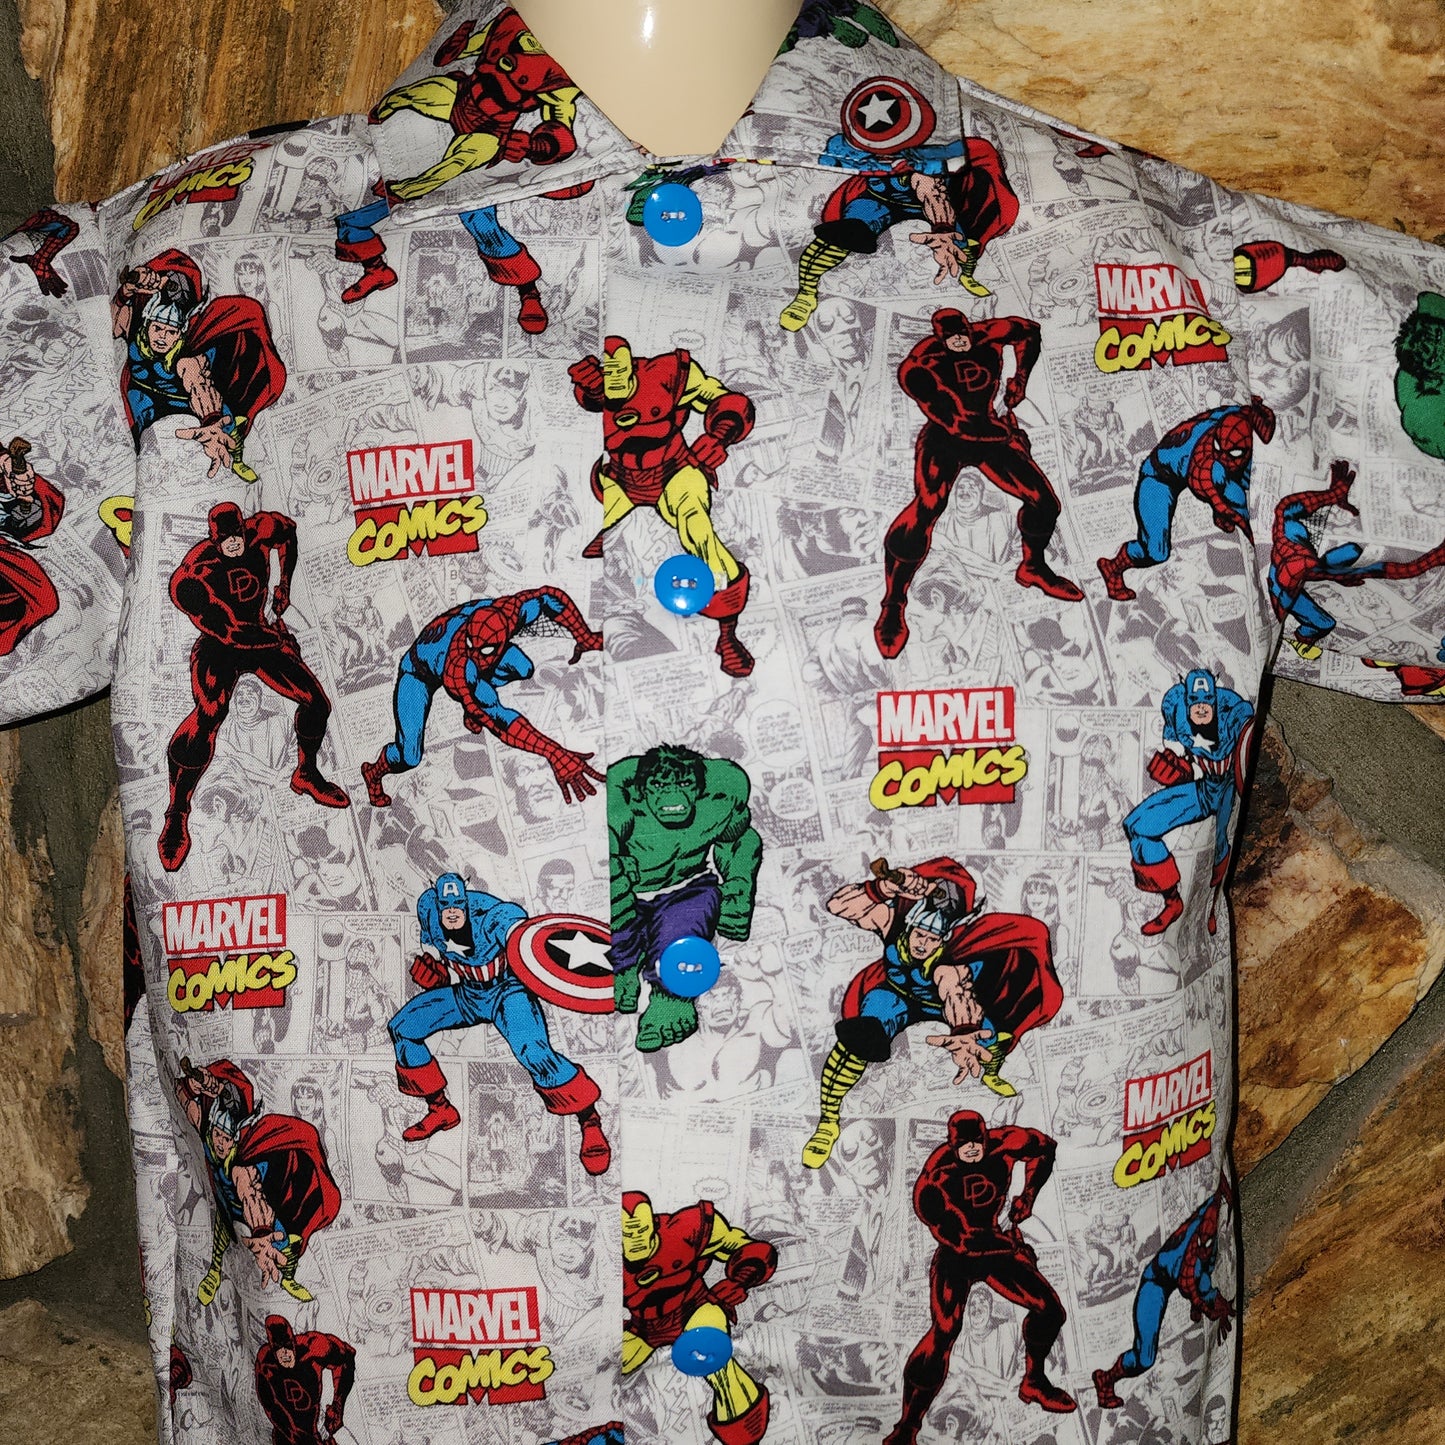 Avenger Shirt